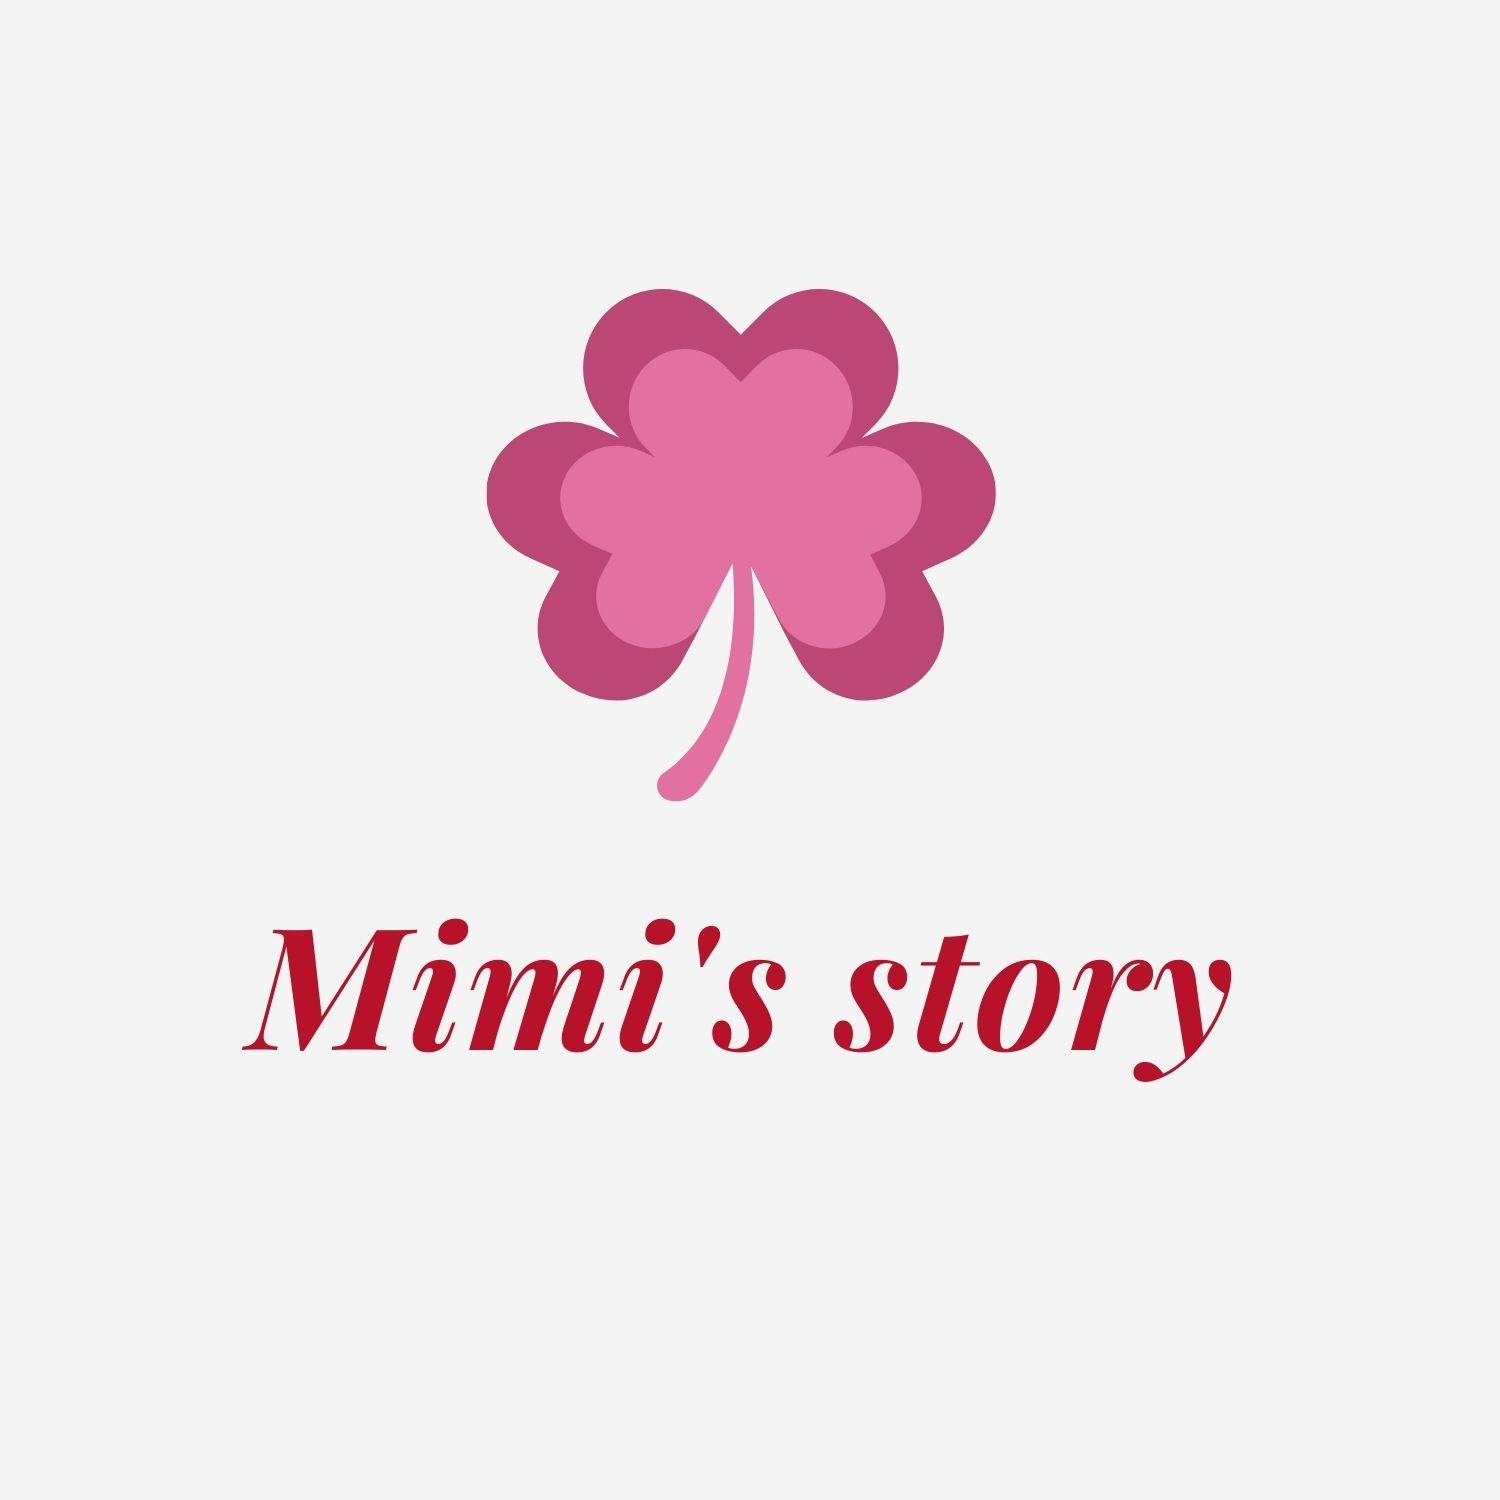 Mimi's story